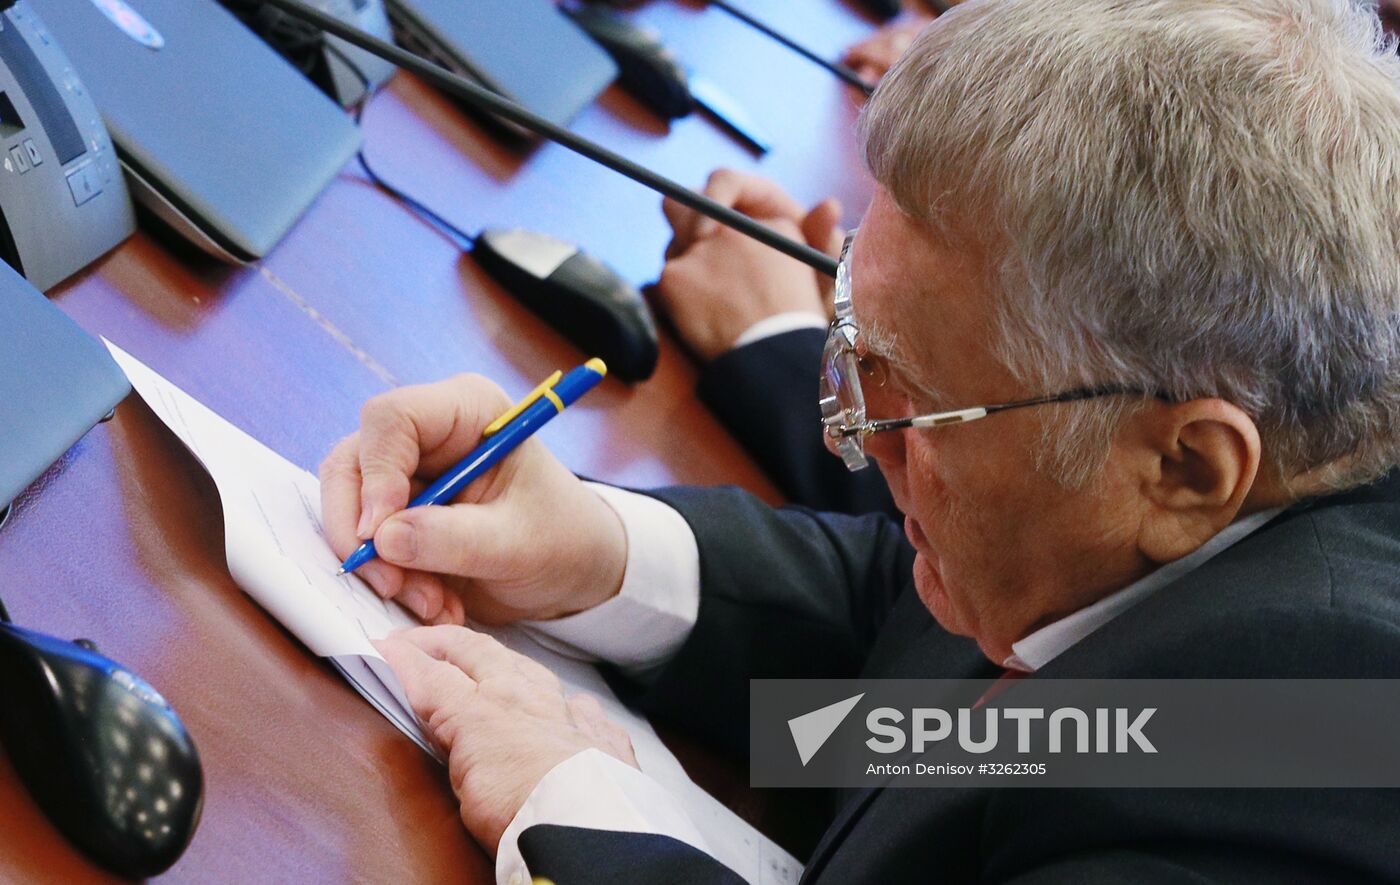 Vladimir Zhirinovsky registers to run for president